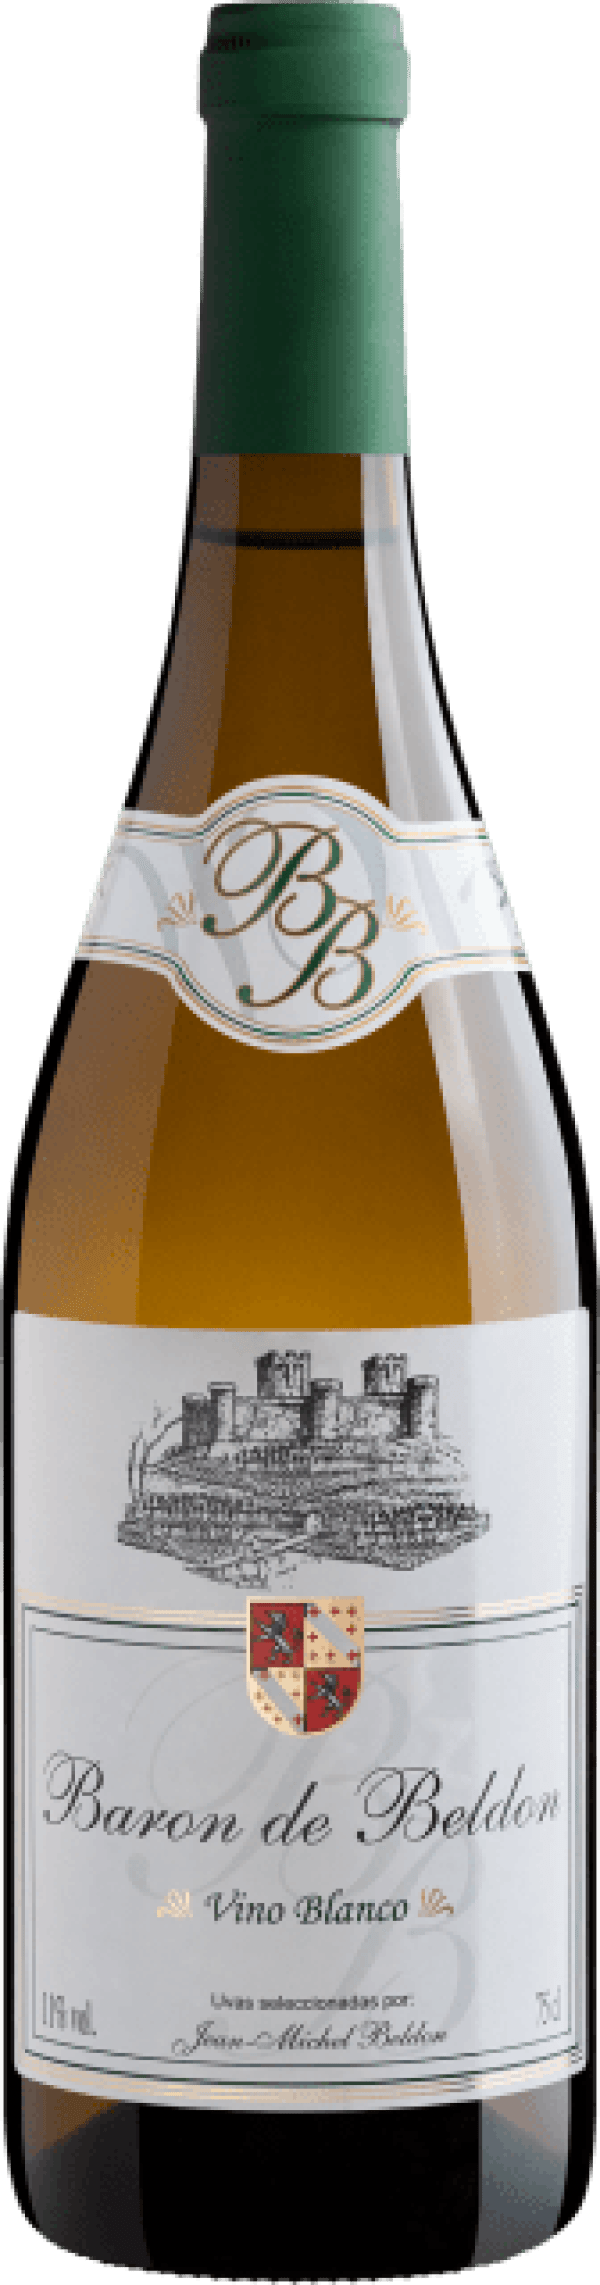 Baron de Beldon Vino Blanco 2020